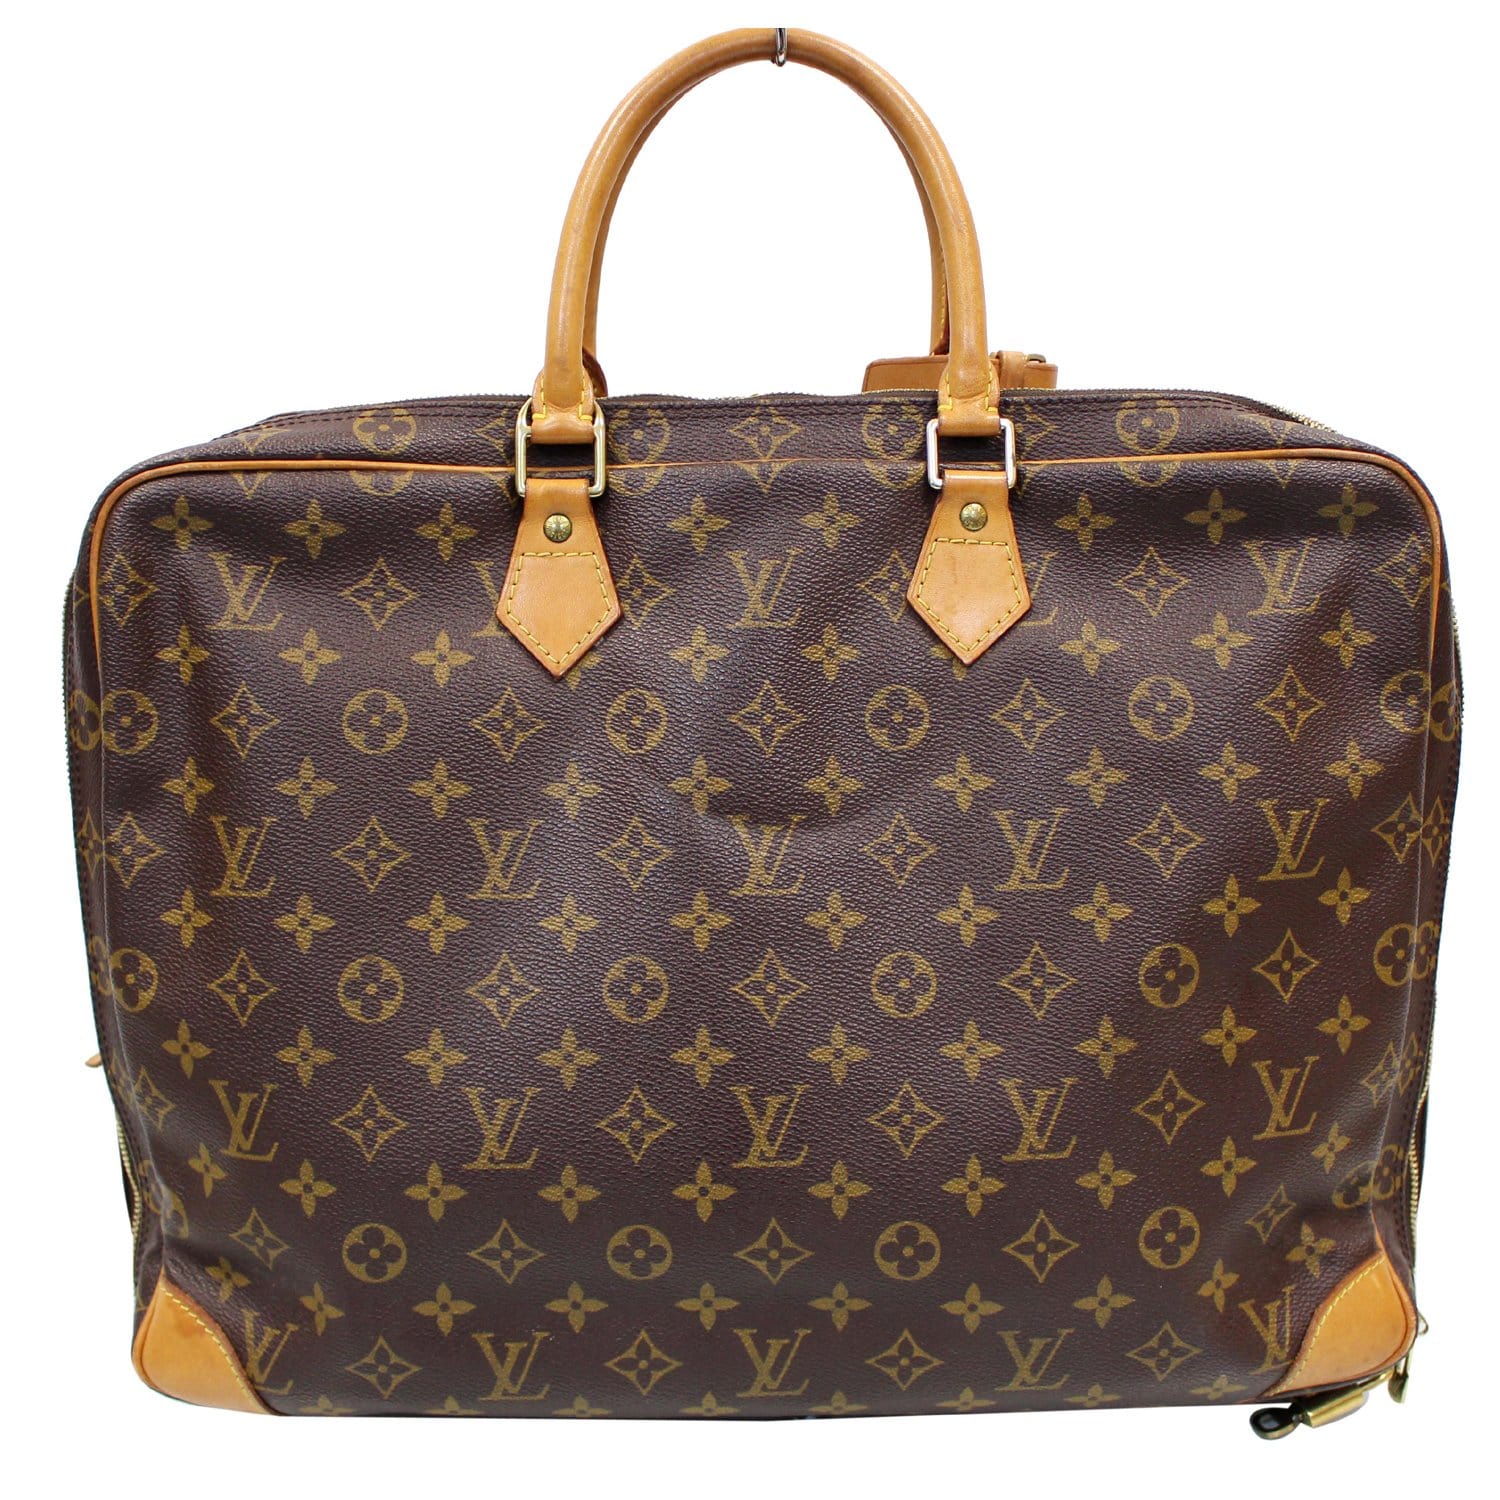 Louis Vuitton Porte-Documents Voyage Briefcase Bag